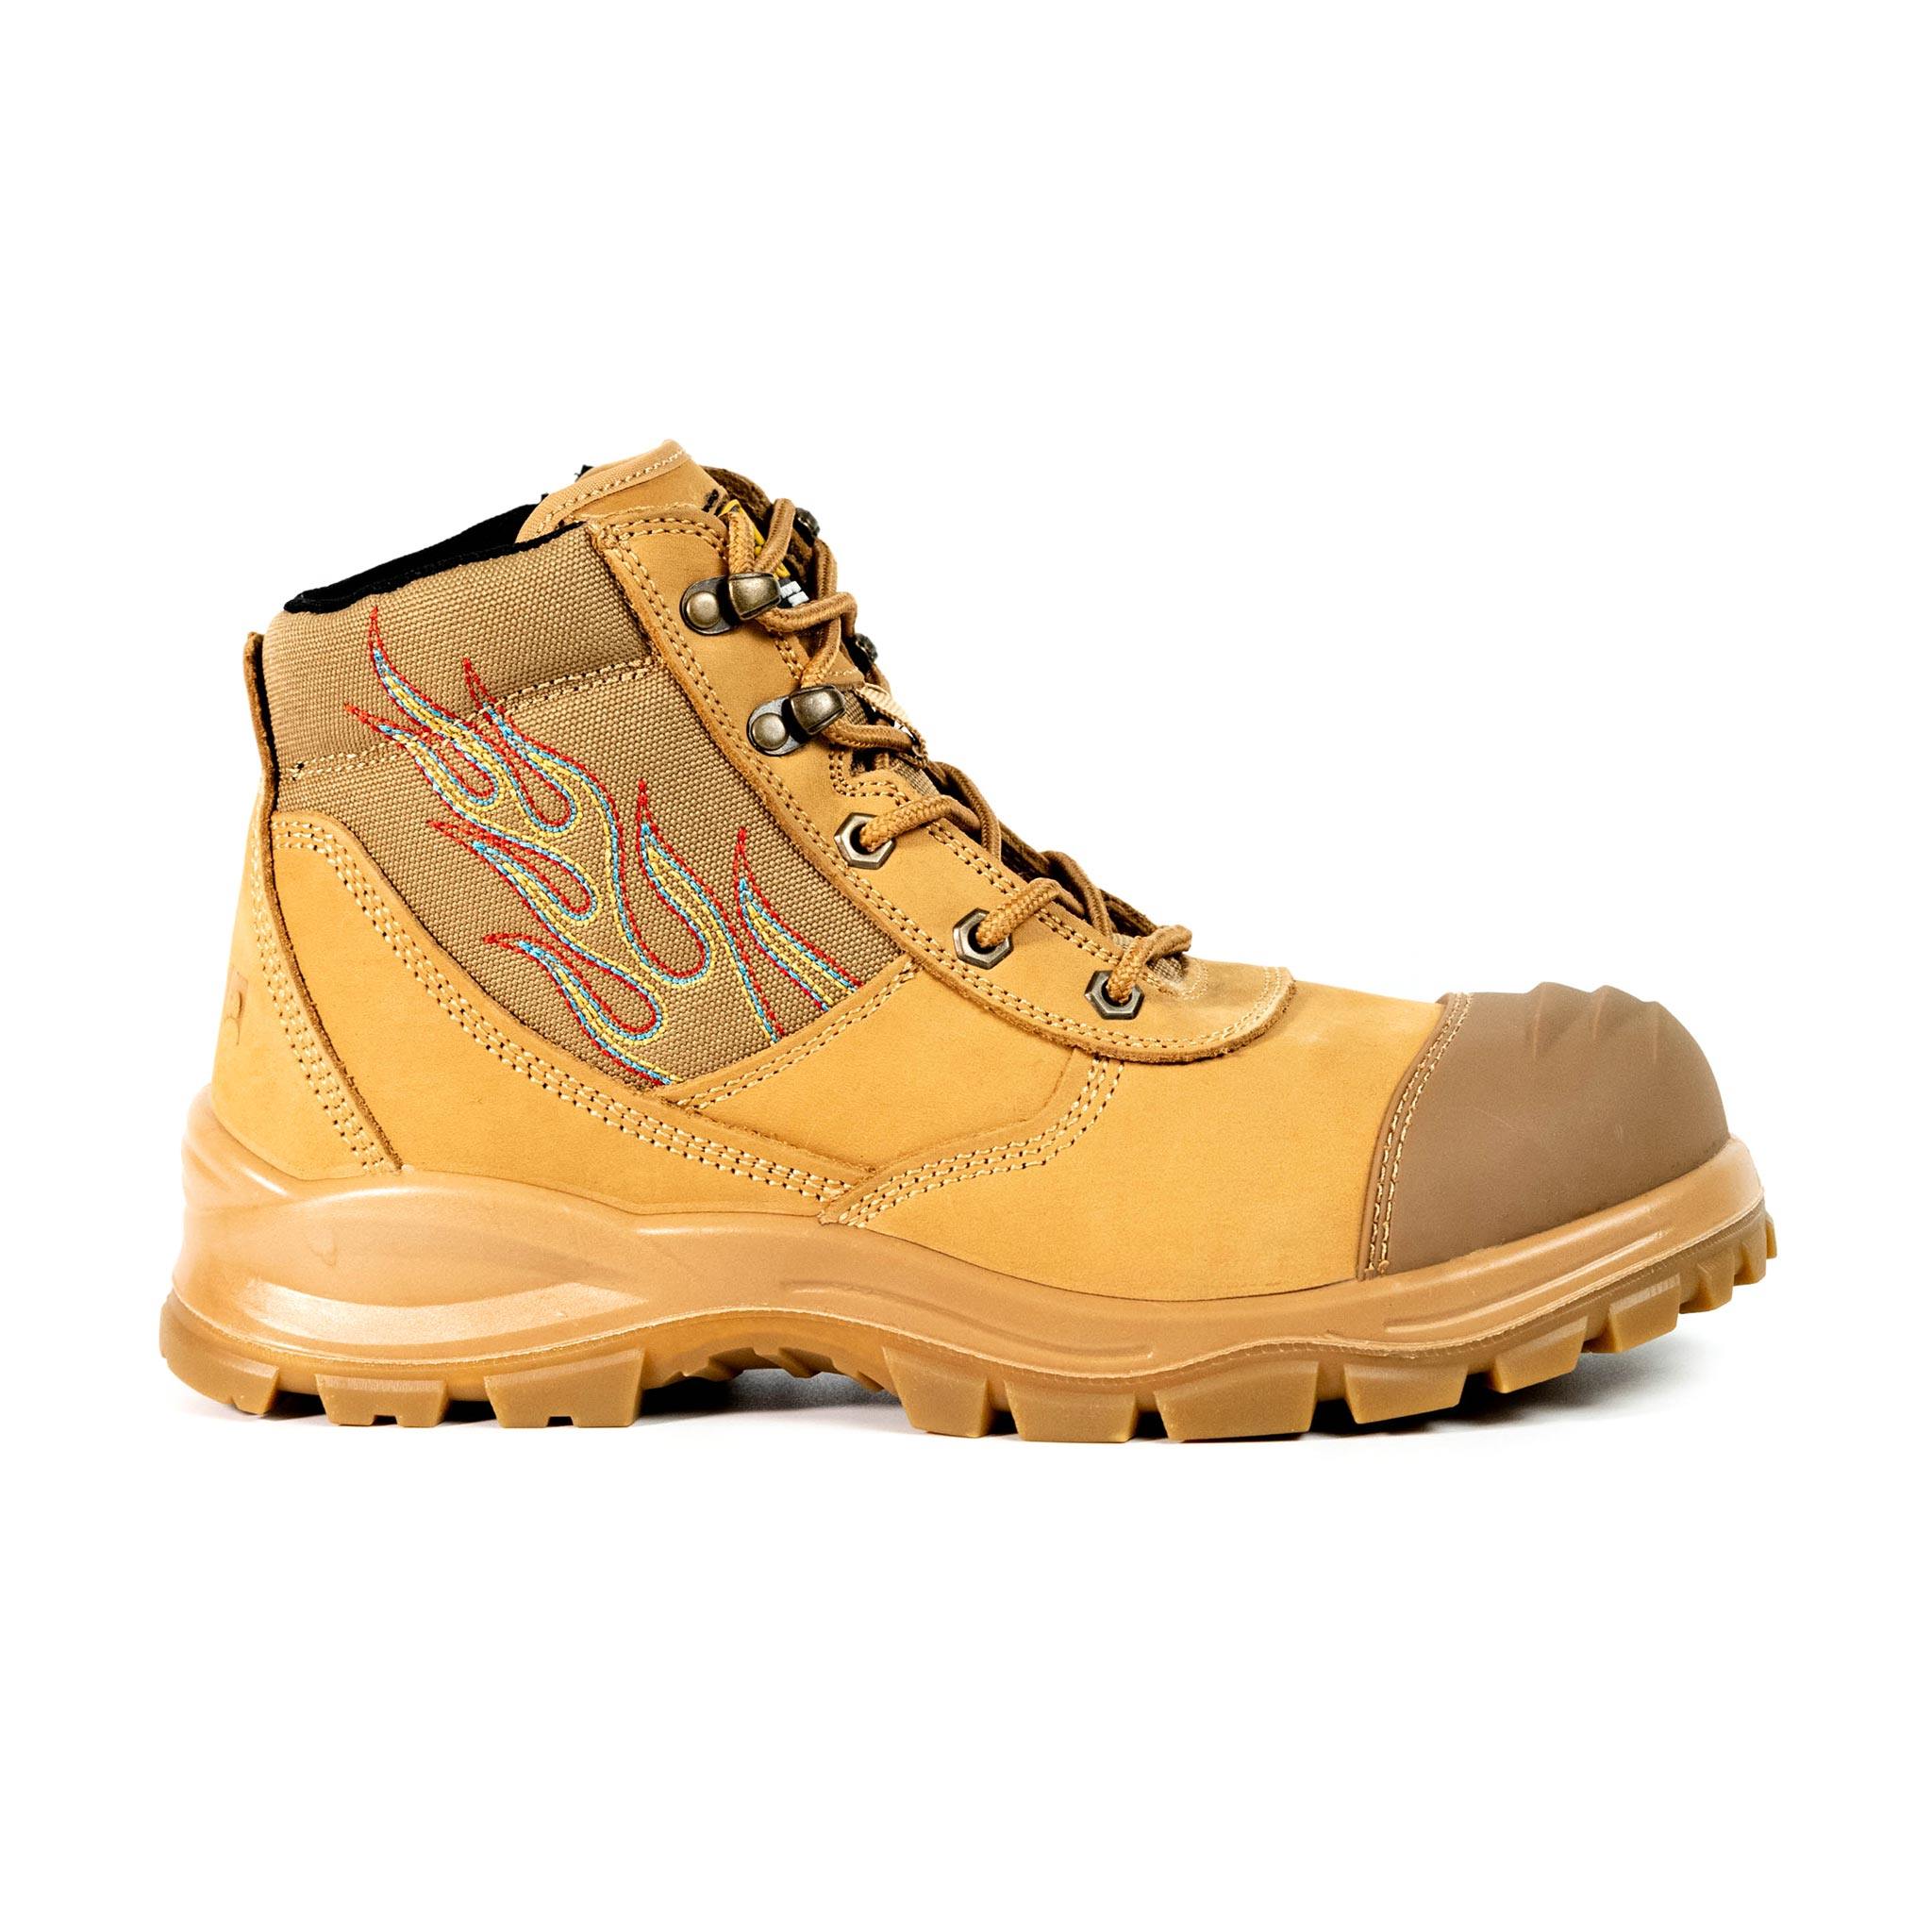 Men's 6" Steel Toe Boots - EH Safety | S001 - USINE PRO Footwear